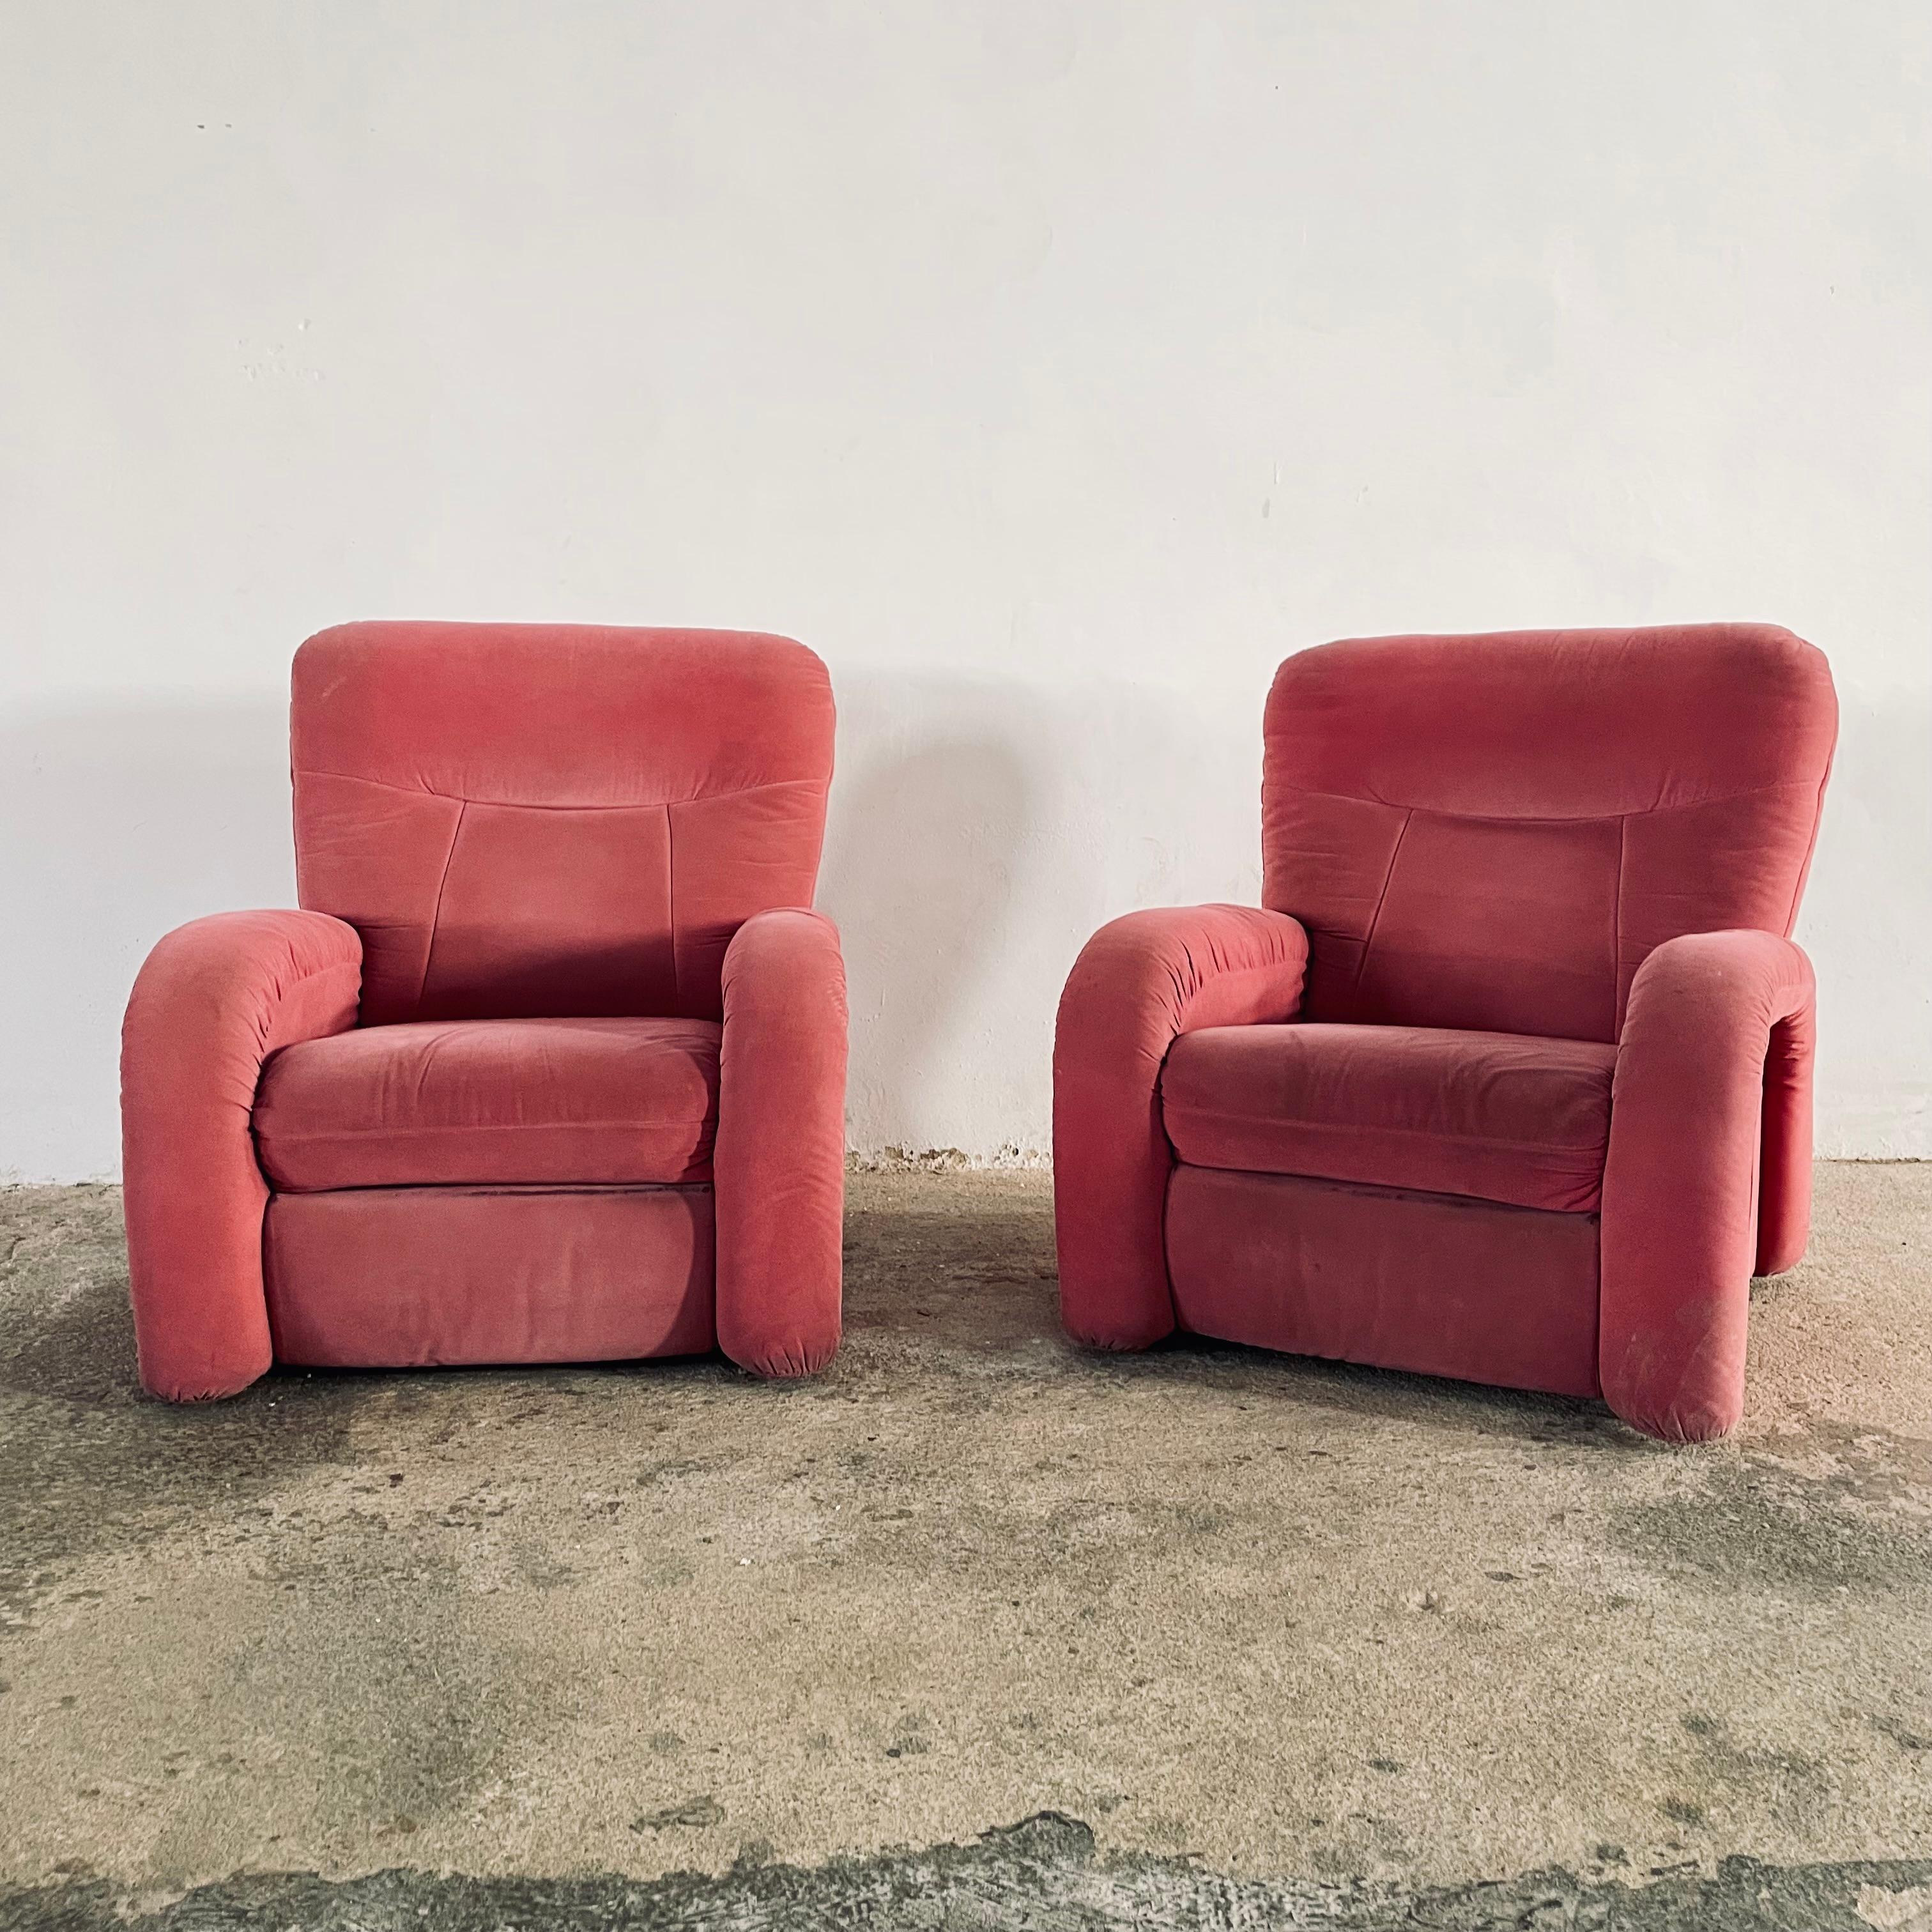 Magnifiques chaises de salon italiennes de style Art Déco en état d'origine, revêtement en velours rétro et piétement en métal, conçues en Italie dans les années 1950, 1 des 2 chaises disponibles, prix à l'unité.
Ces articles vintage restent